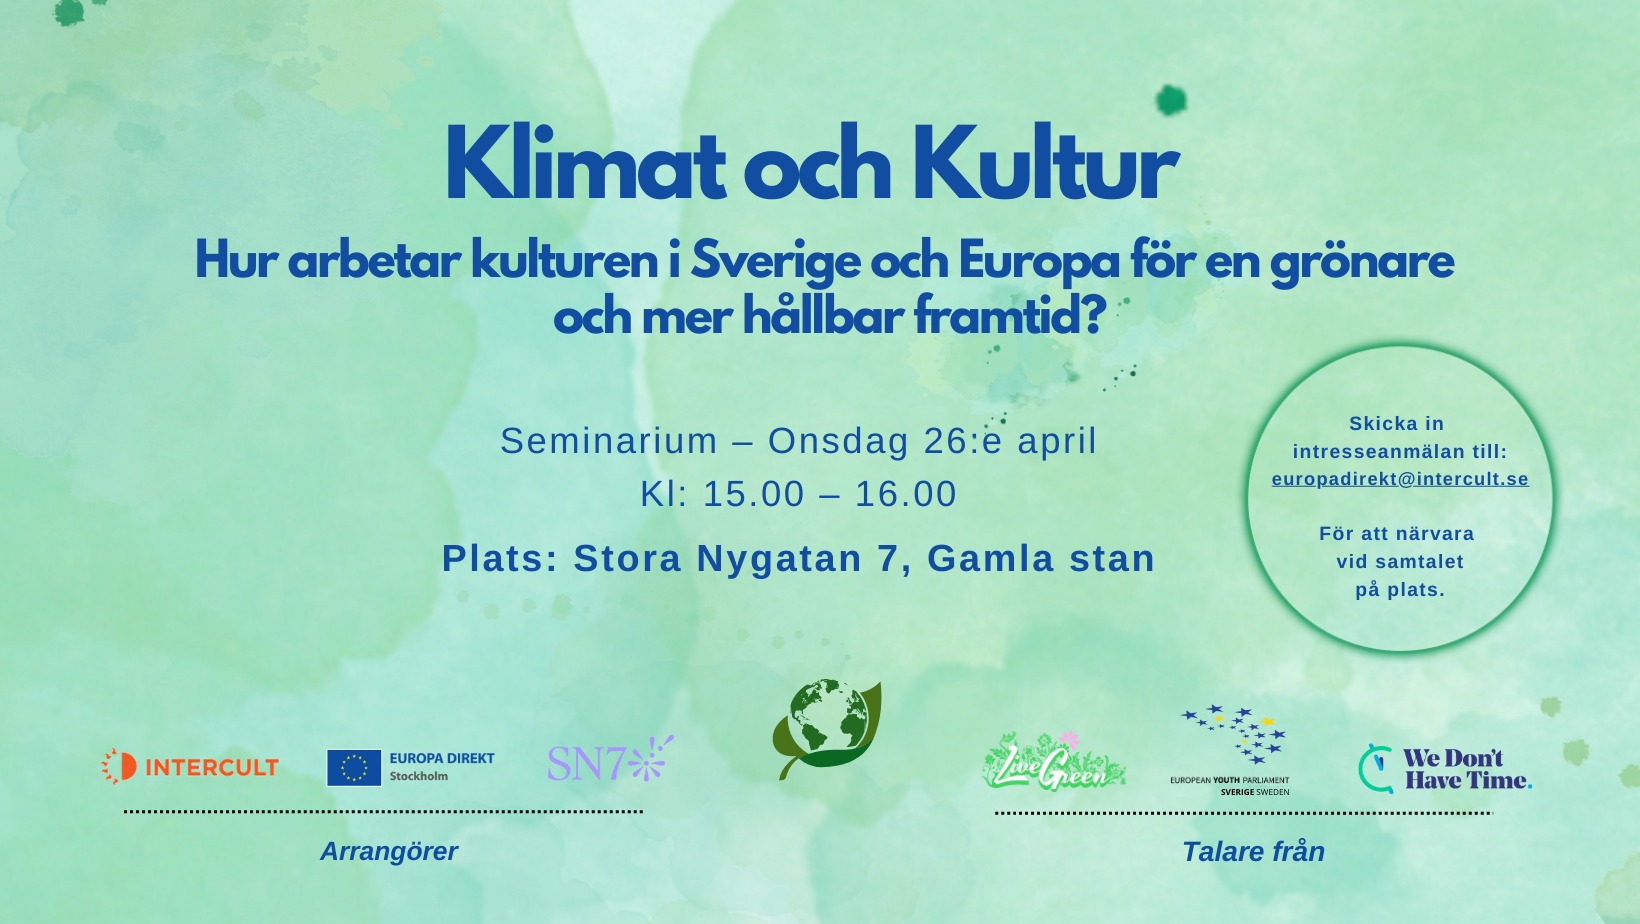 Klimat och Kultur - hur arbetar kulturen i Sverige och Europa för en grönare och mer hållbar framtid